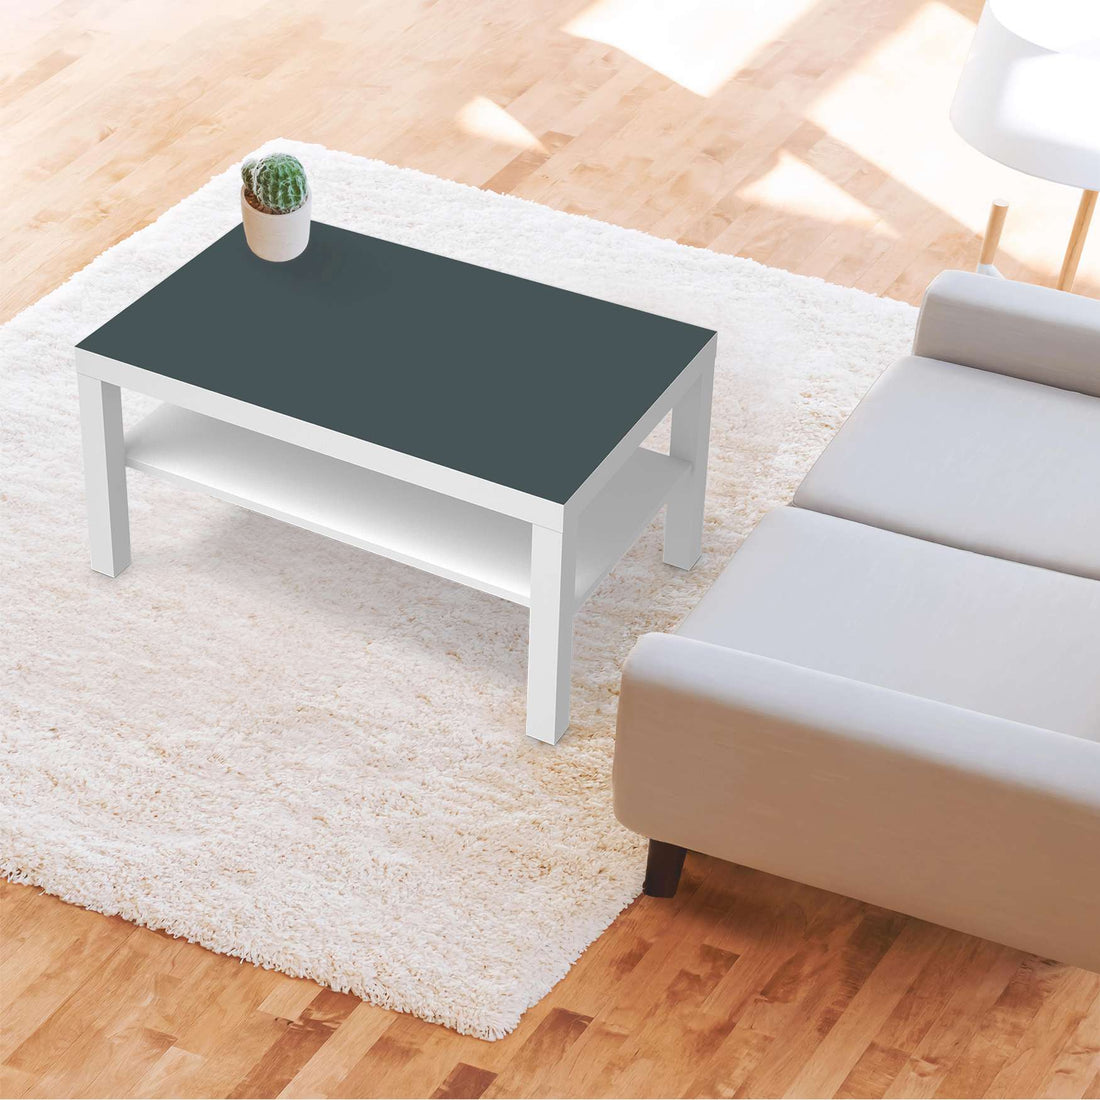 Möbelfolie Blaugrau Light - IKEA Lack Tisch 90x55 cm - Wohnzimmer